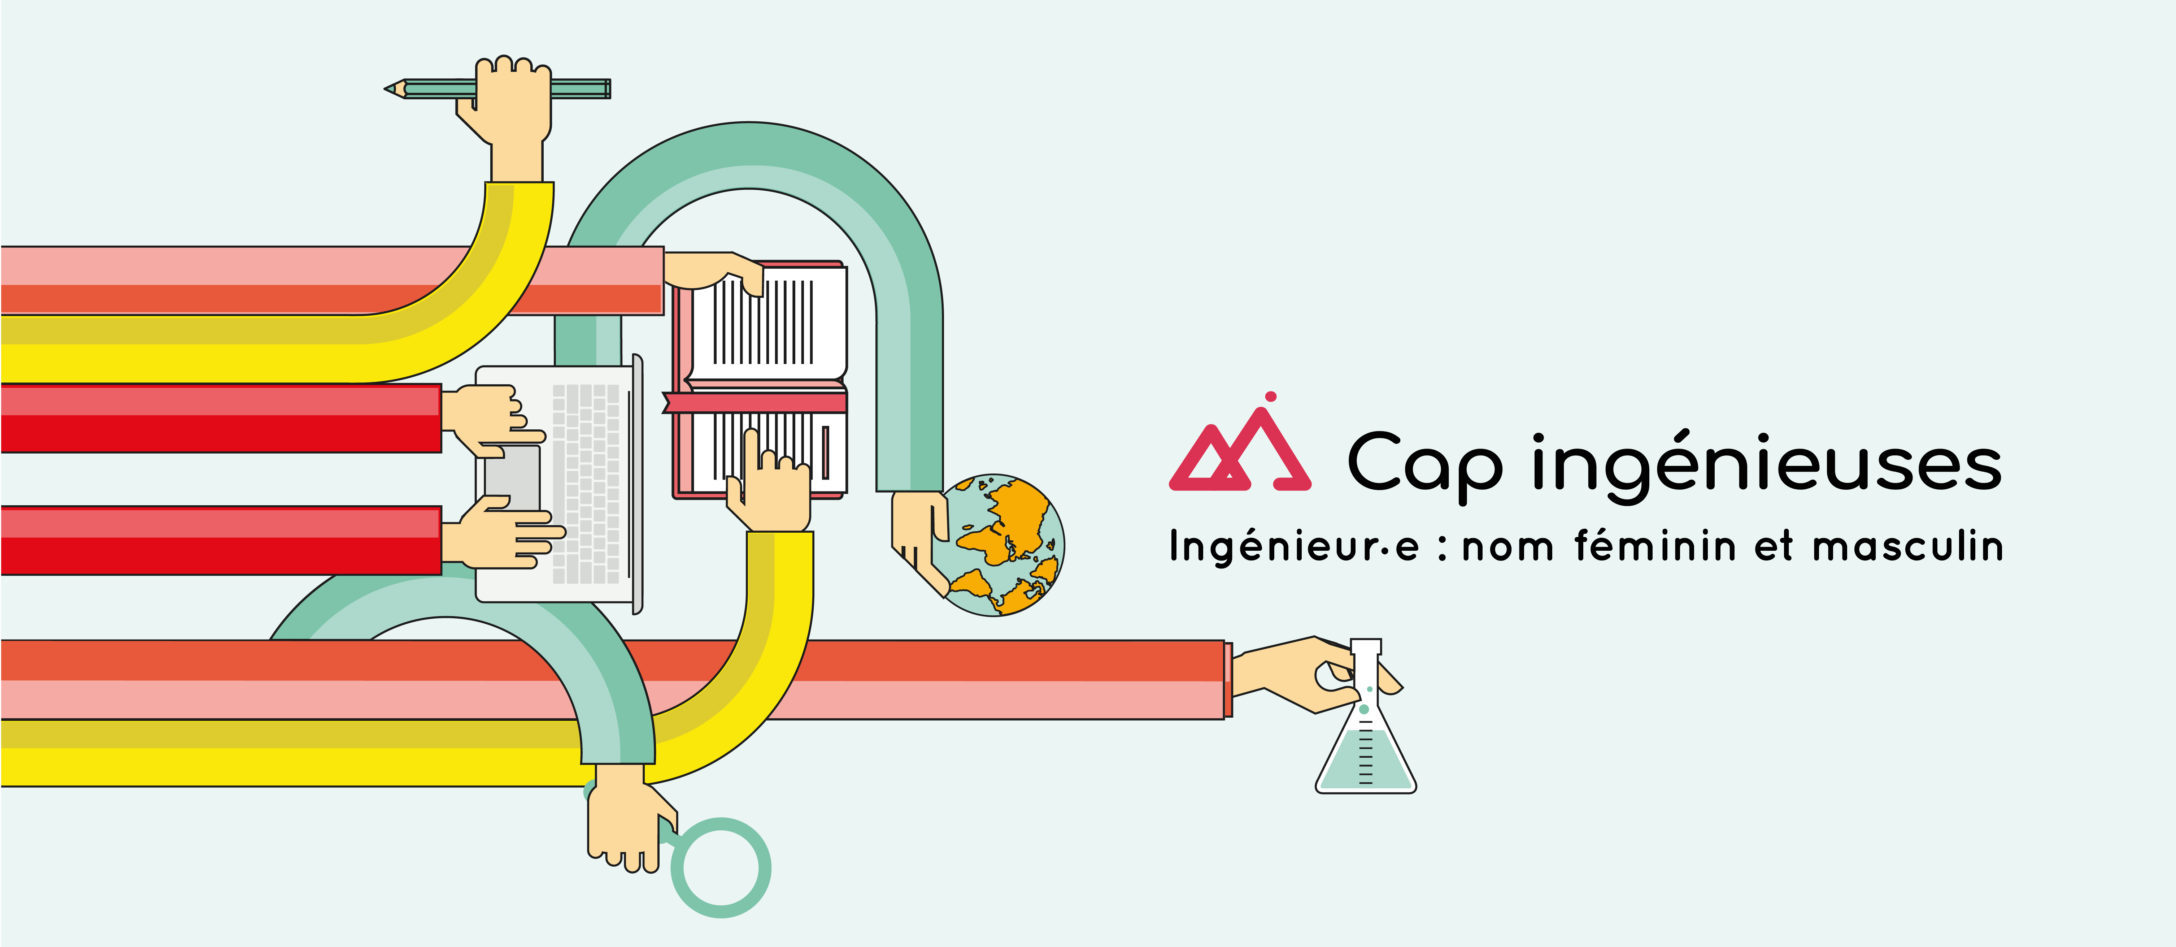 Label Cap Ingénieuses : lancement d’une nouvelle vague de labellisation